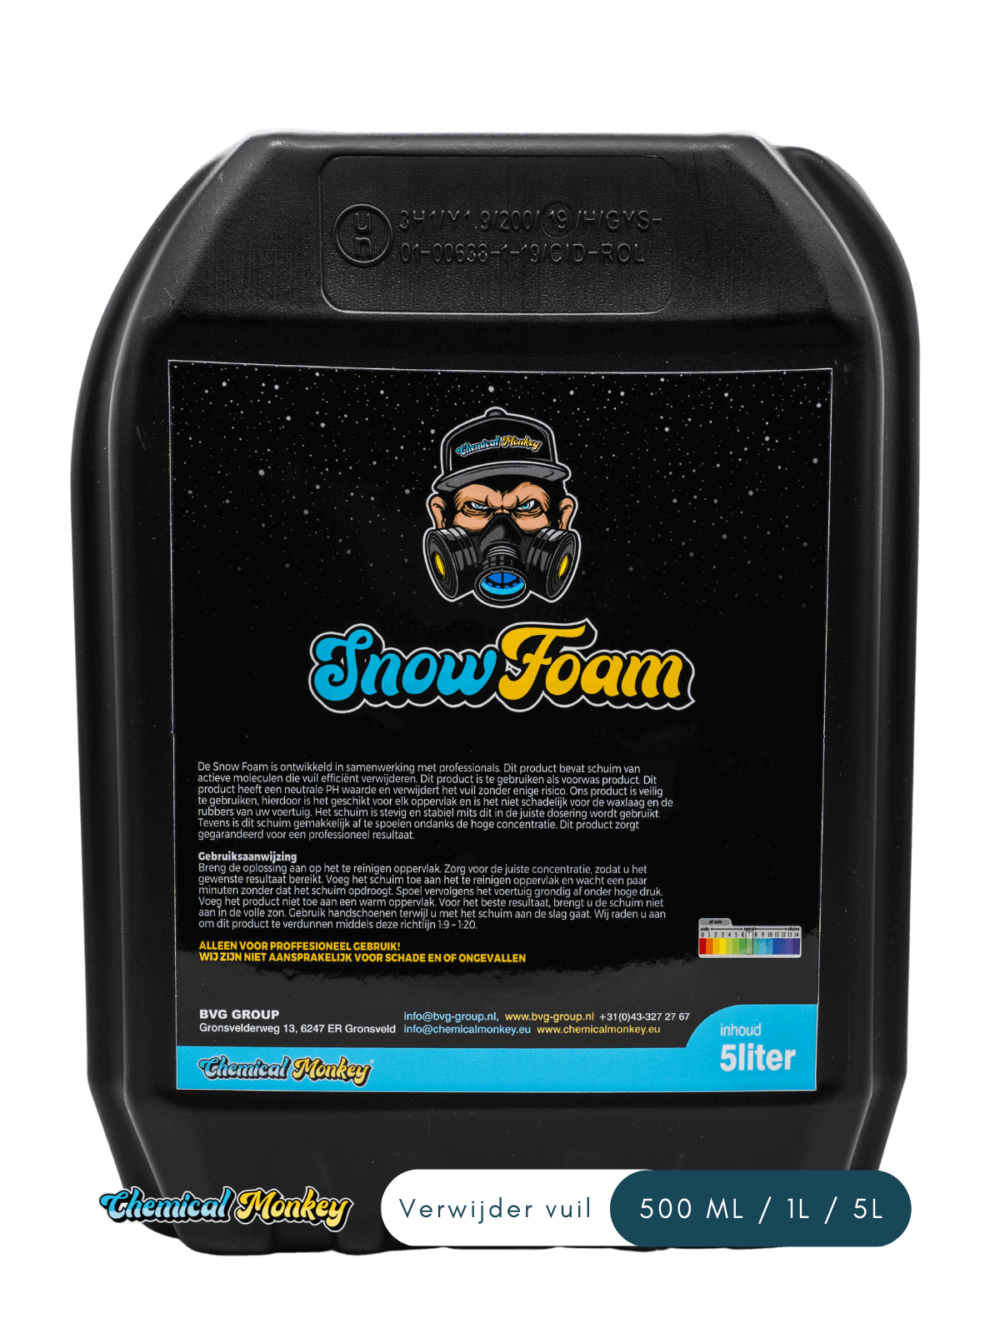 Snow foam is een product voor het losweken van vuil van de auto of ander voertuig